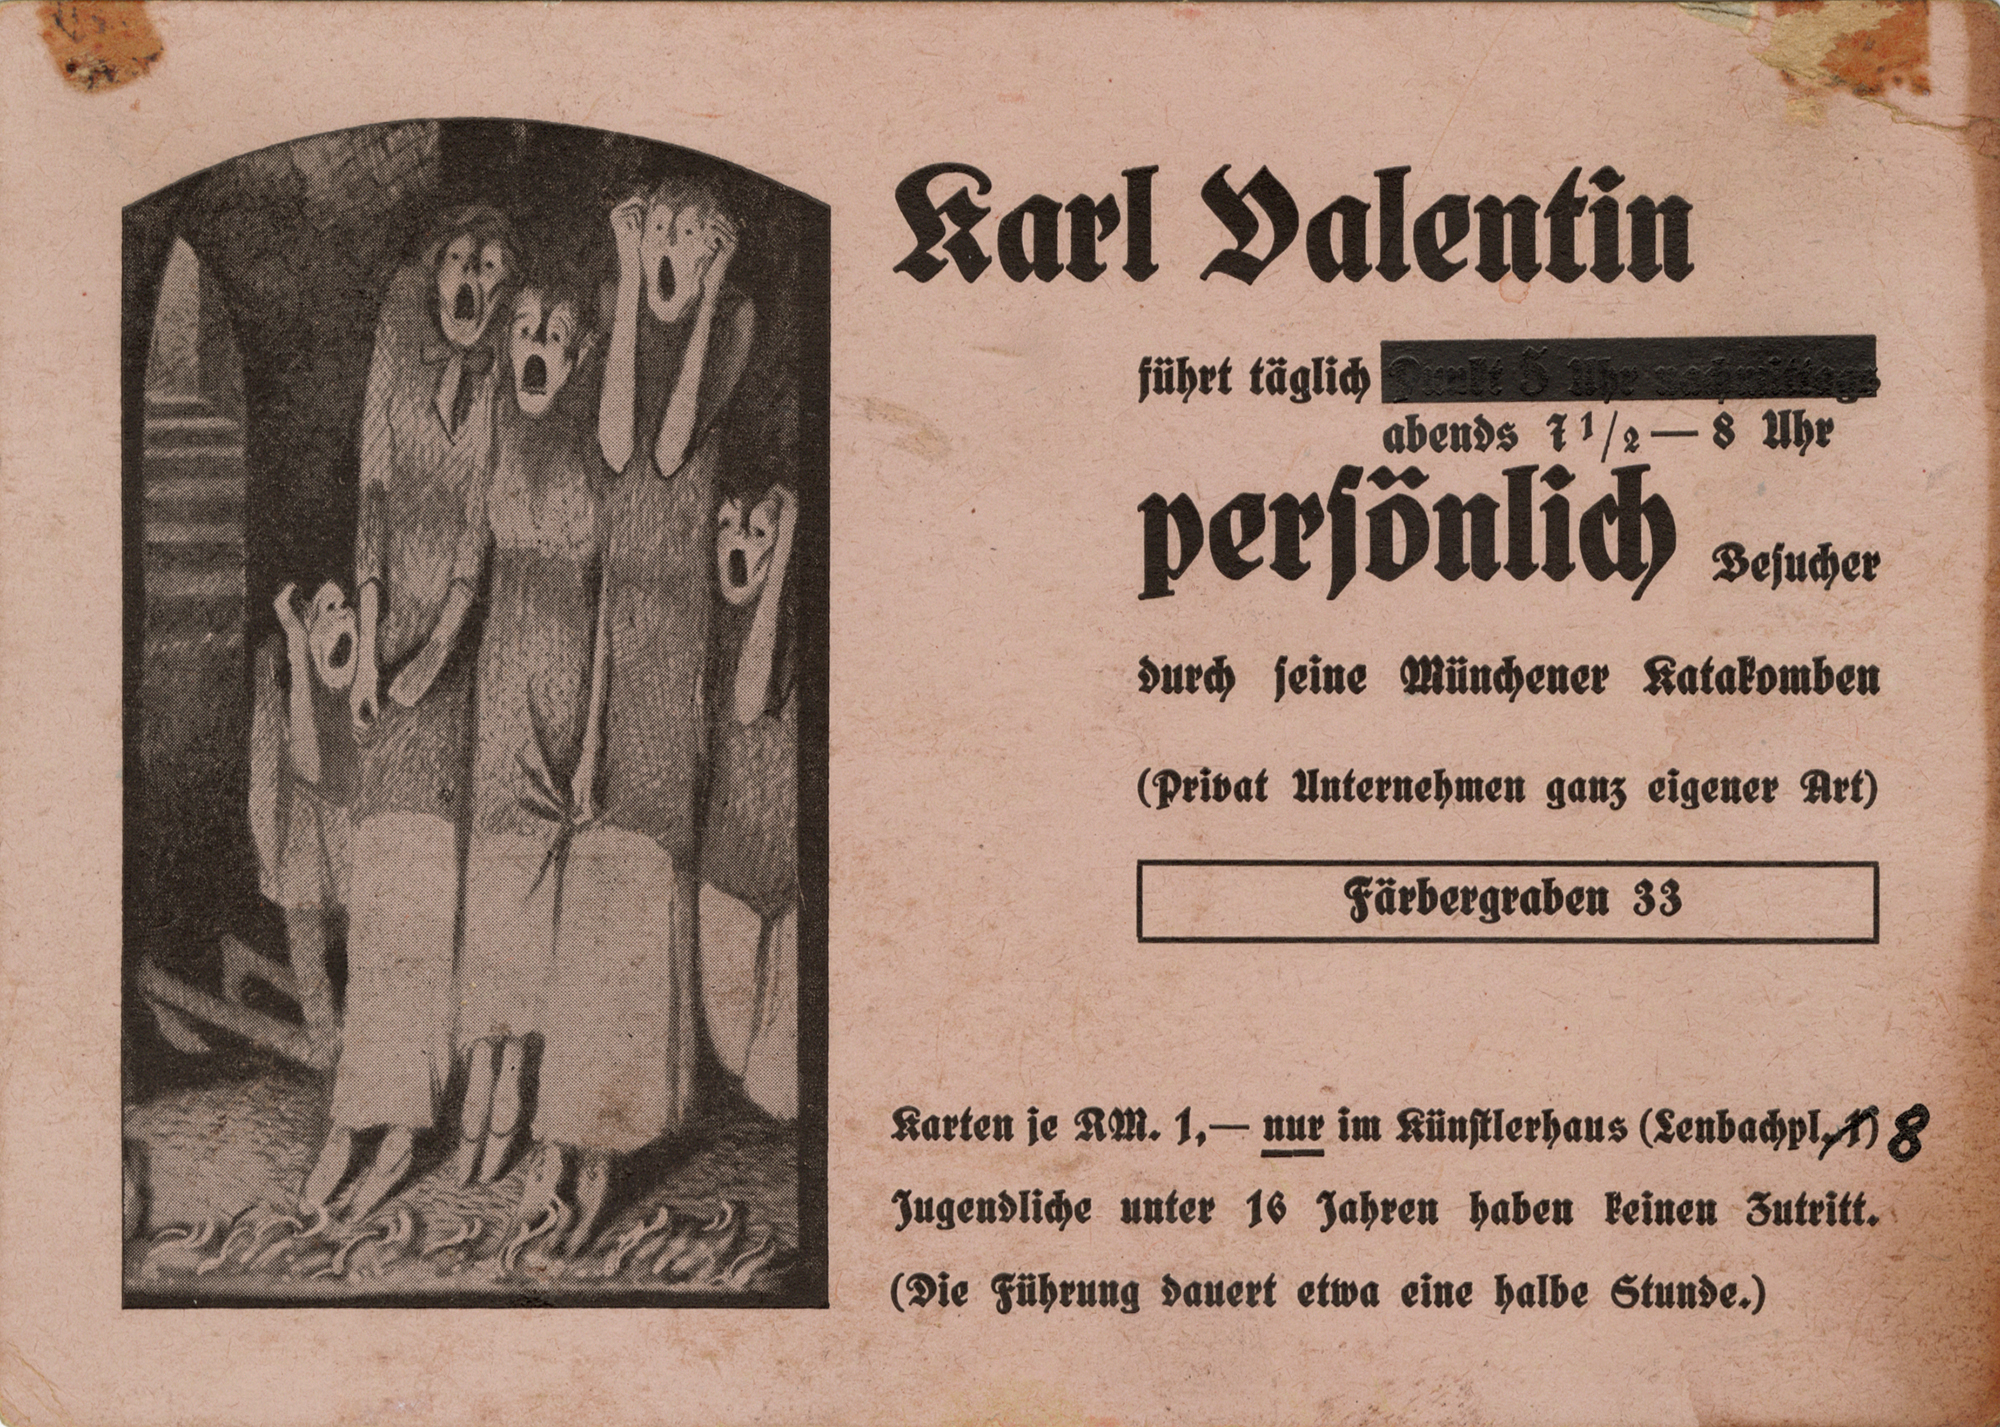 Karl Valentin, Karl Valentin, Werbekarte für das Panoptikum in der Ritterspelunke, Färbergraben 33, nach 1937